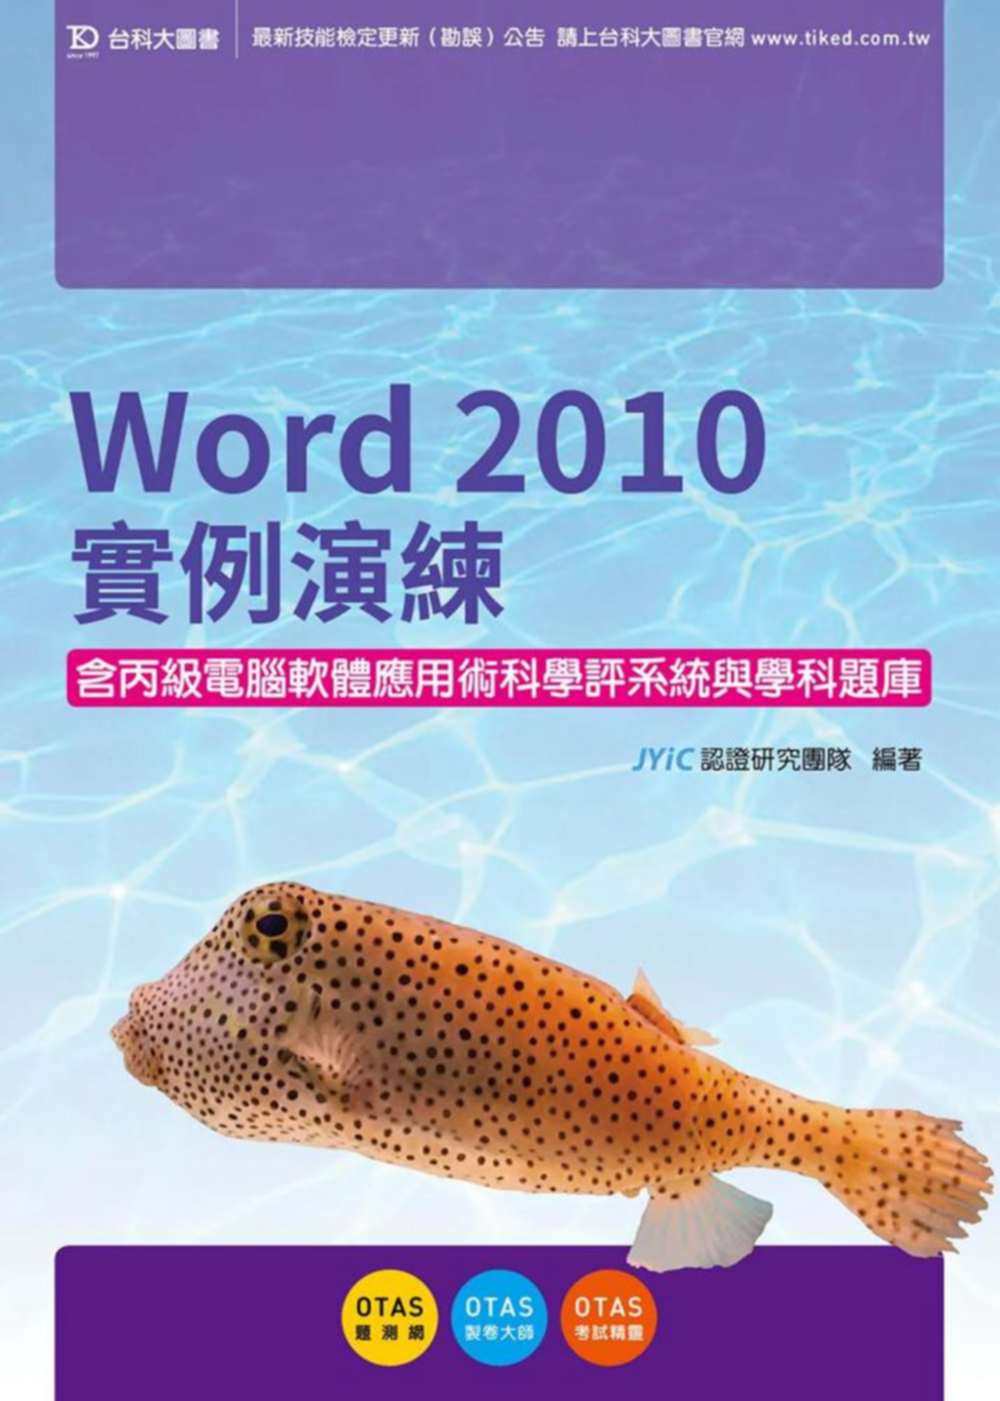 Word 2010實例演練含丙級電腦軟體應用術科學評系統與學科題庫